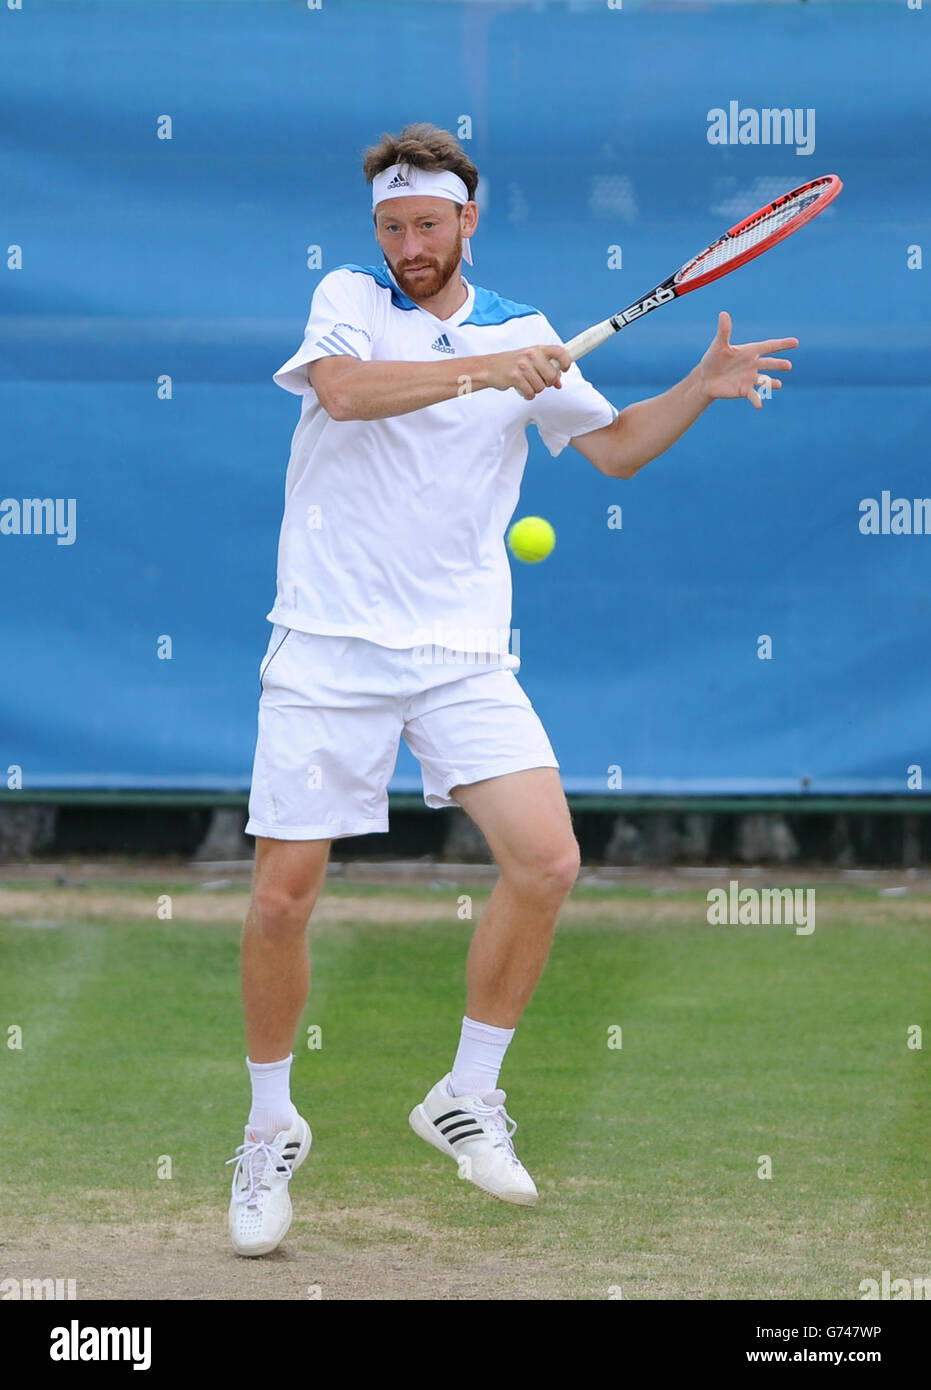 Der slowakische Miloslav Mecir in Aktion gegen den australischen Nick Kyrgios während der AEGON Nottingham Challenge im Nottingham Tennis Center, Nottingham. Stockfoto